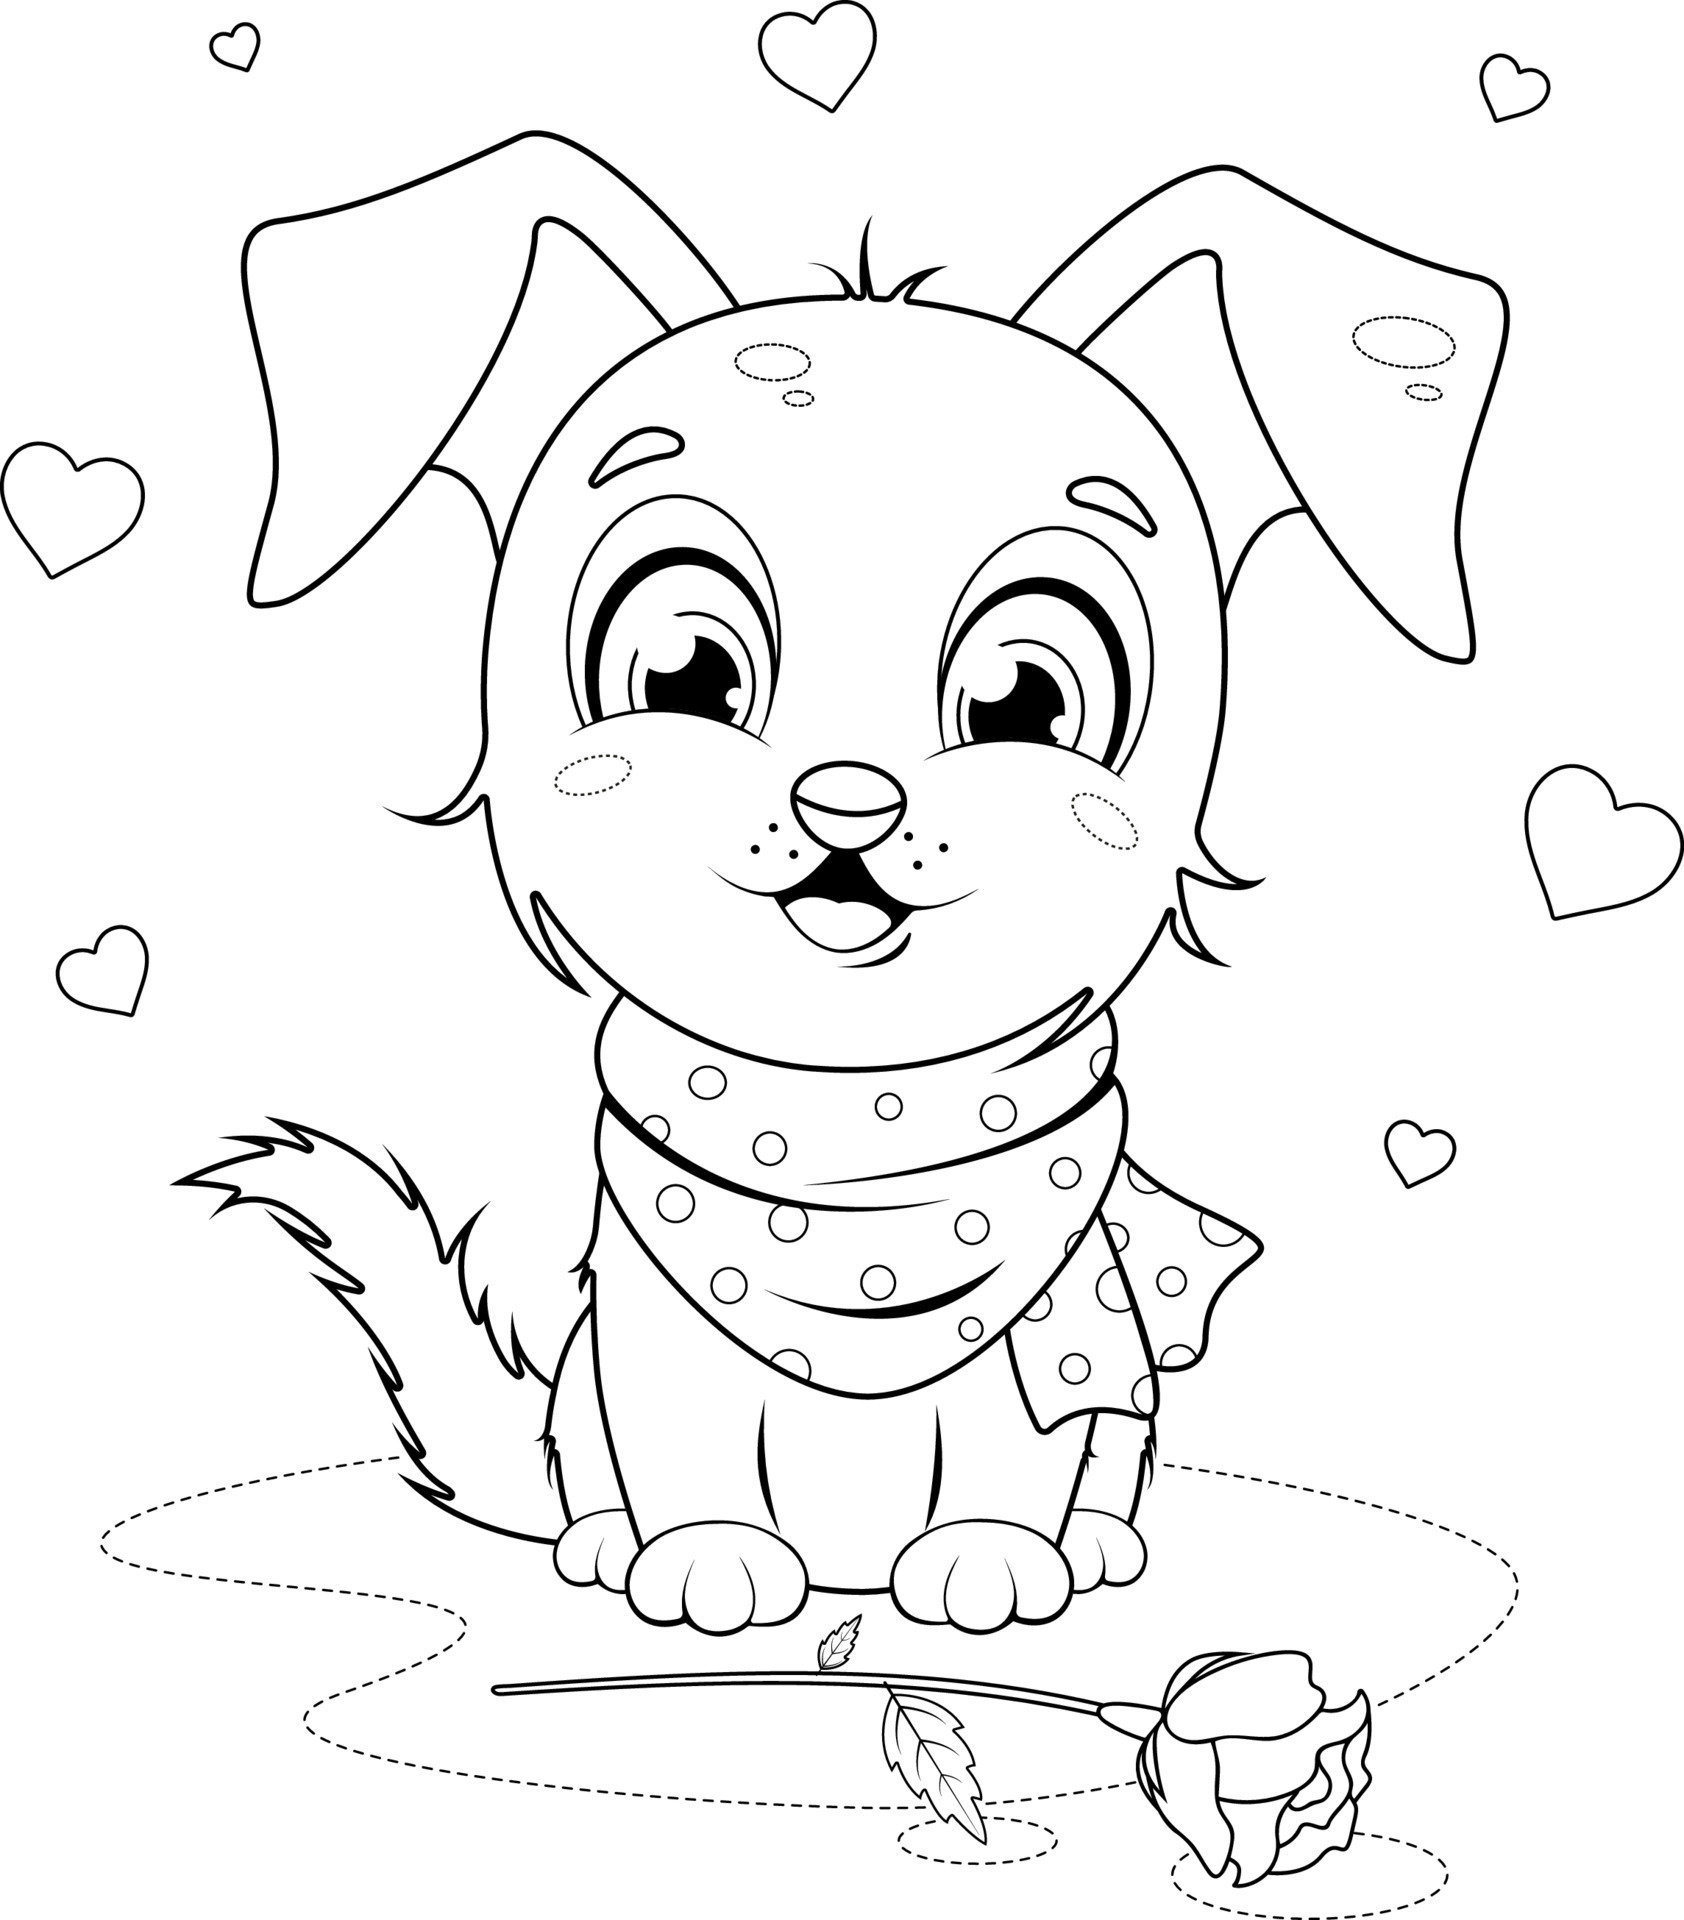 página para colorir. um cachorrinho de desenho animado bonito e alegre  senta-se perto de uma rosa e corações 10688314 Vetor no Vecteezy